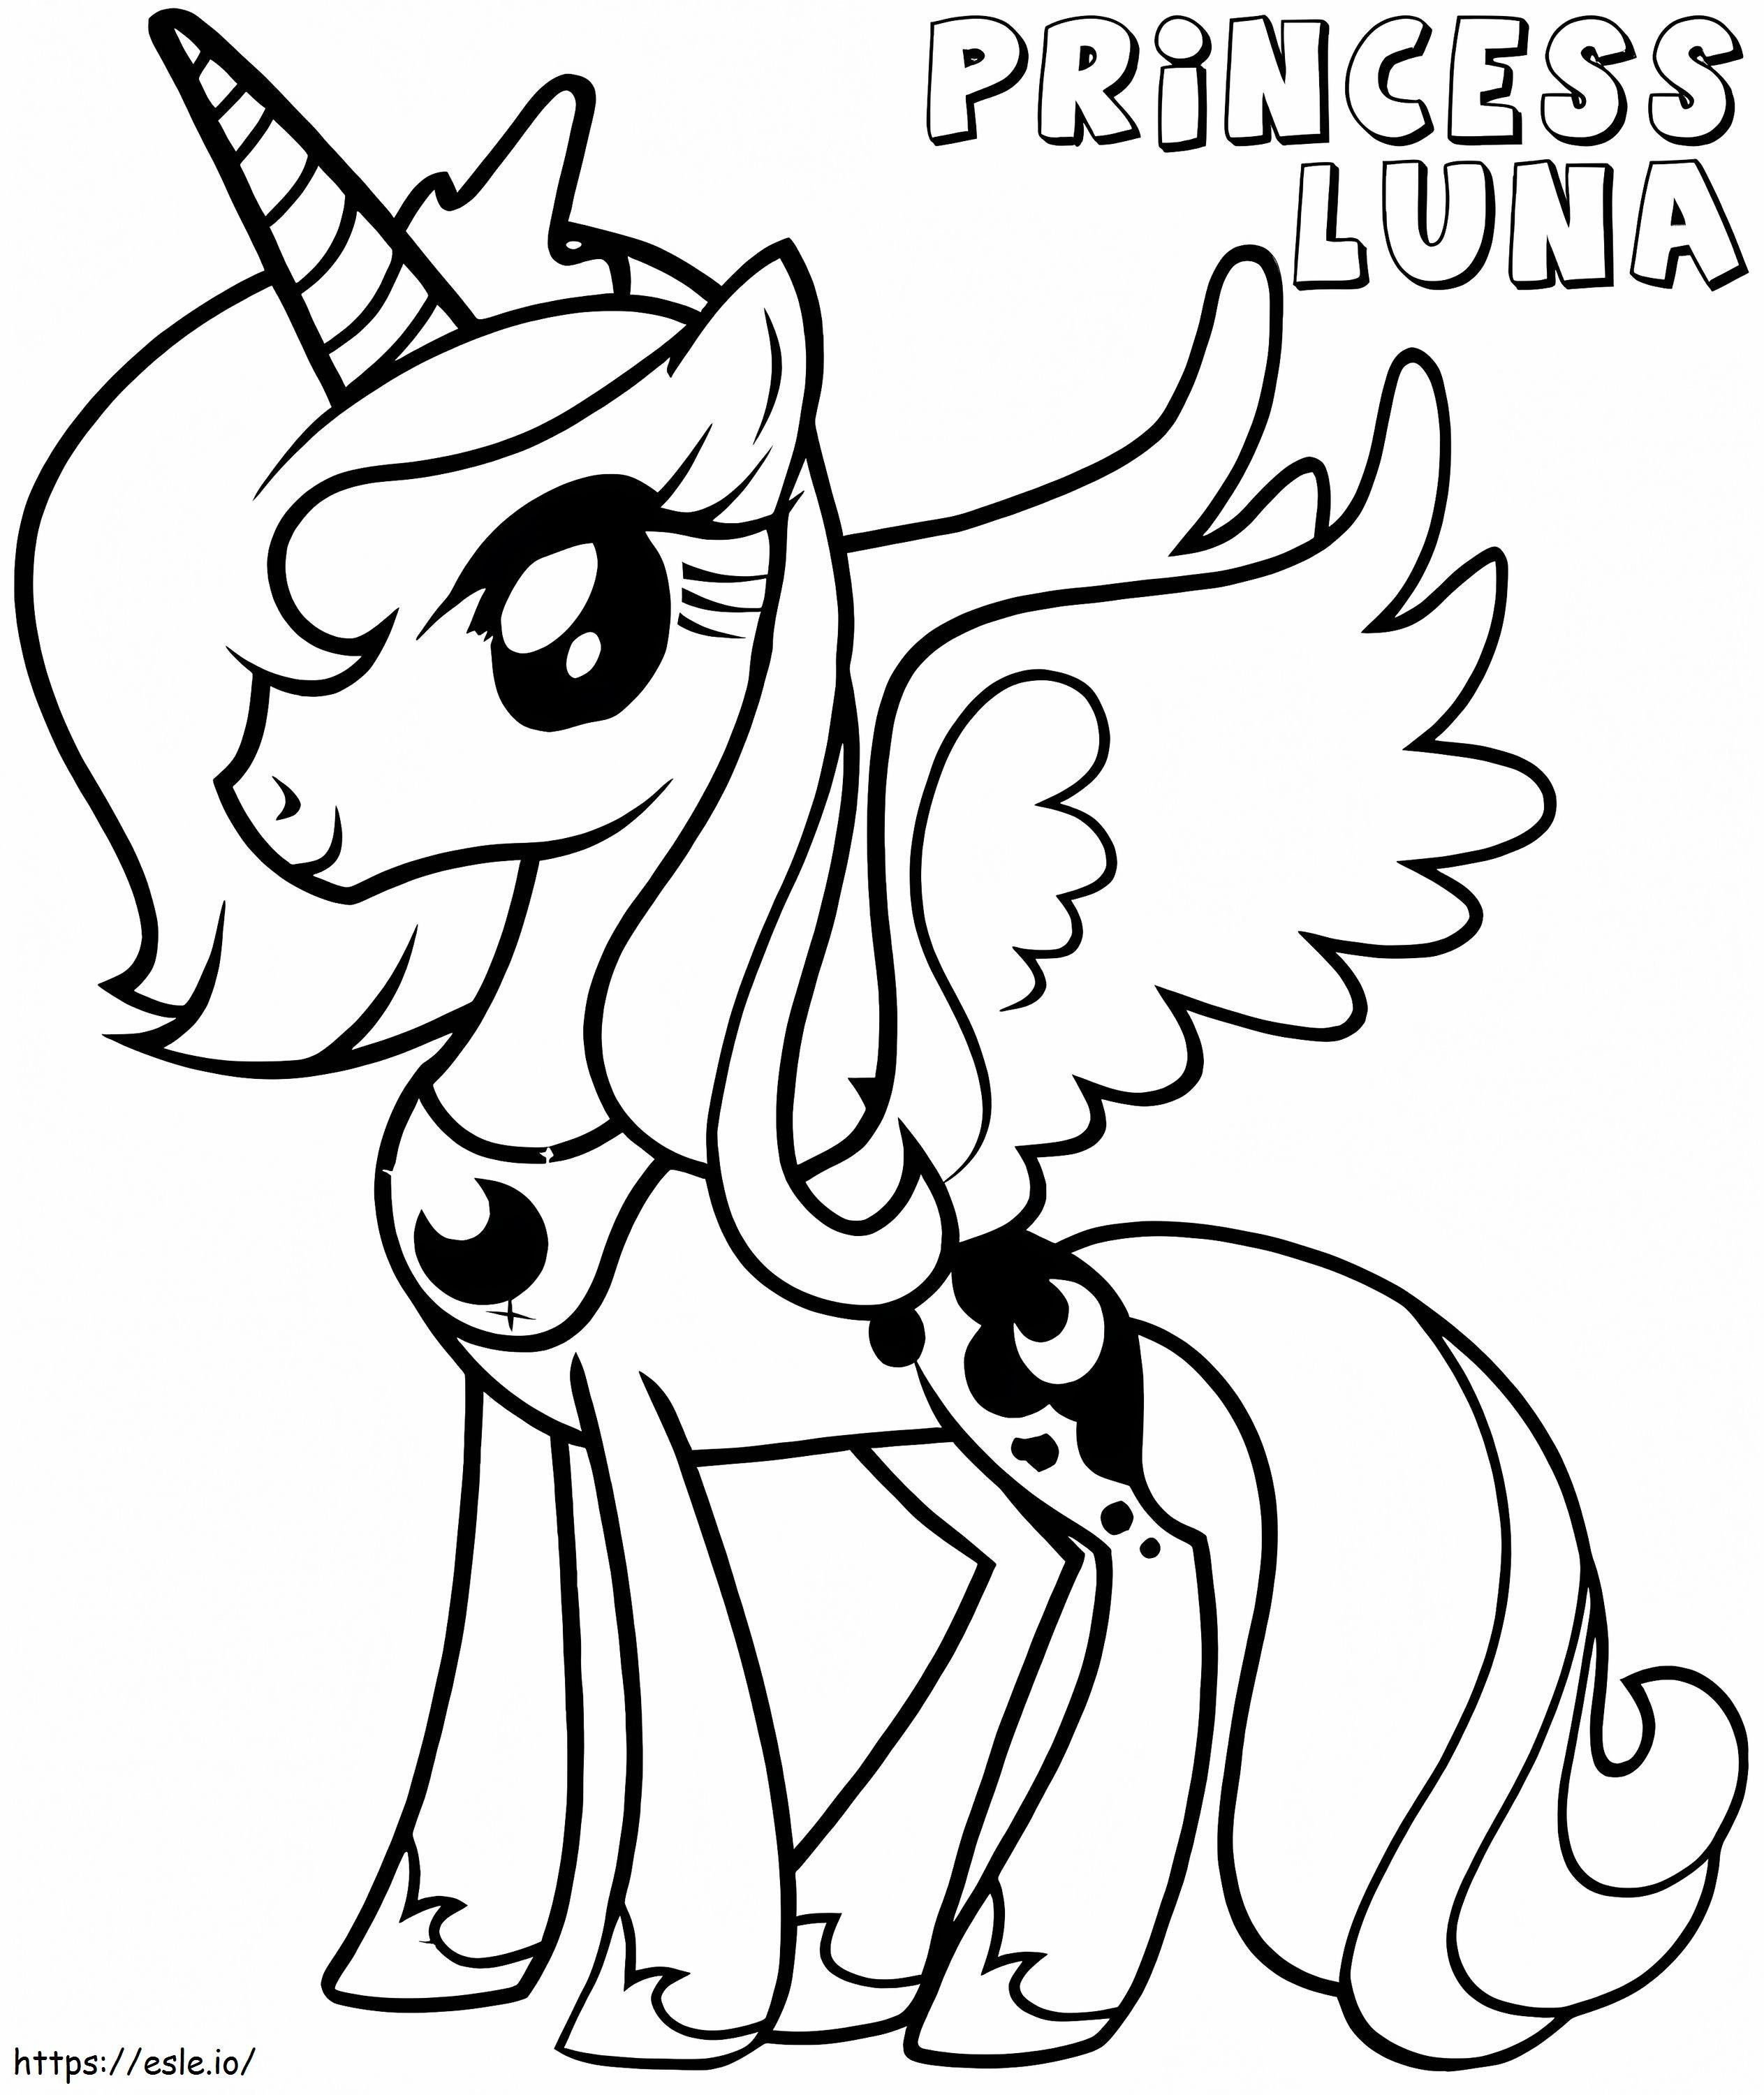 Little Princess Luna coloring page